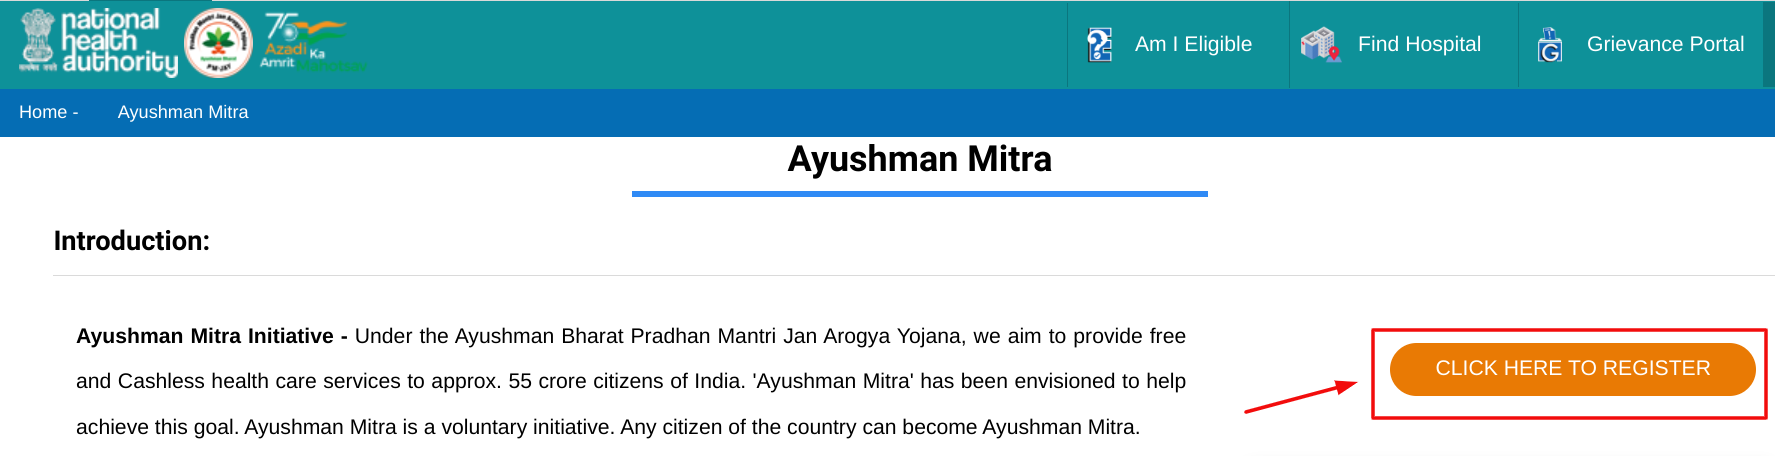 Ayushman Mitra Bharti - Home Page